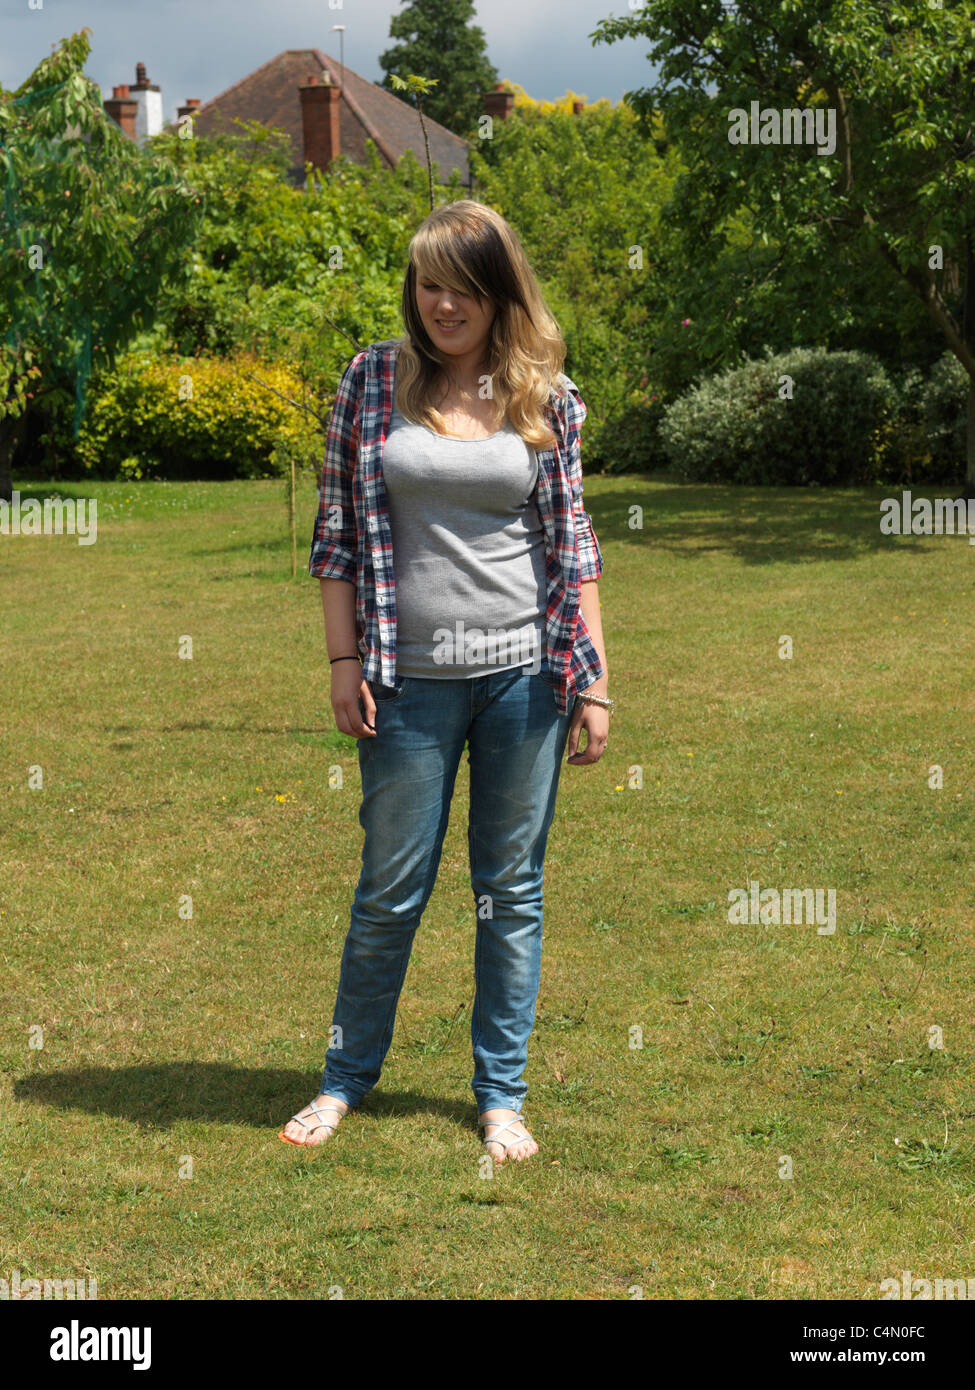 Junge Frau im Garten in Hemd, Jeans und Sandalen Stockfotografie - Alamy